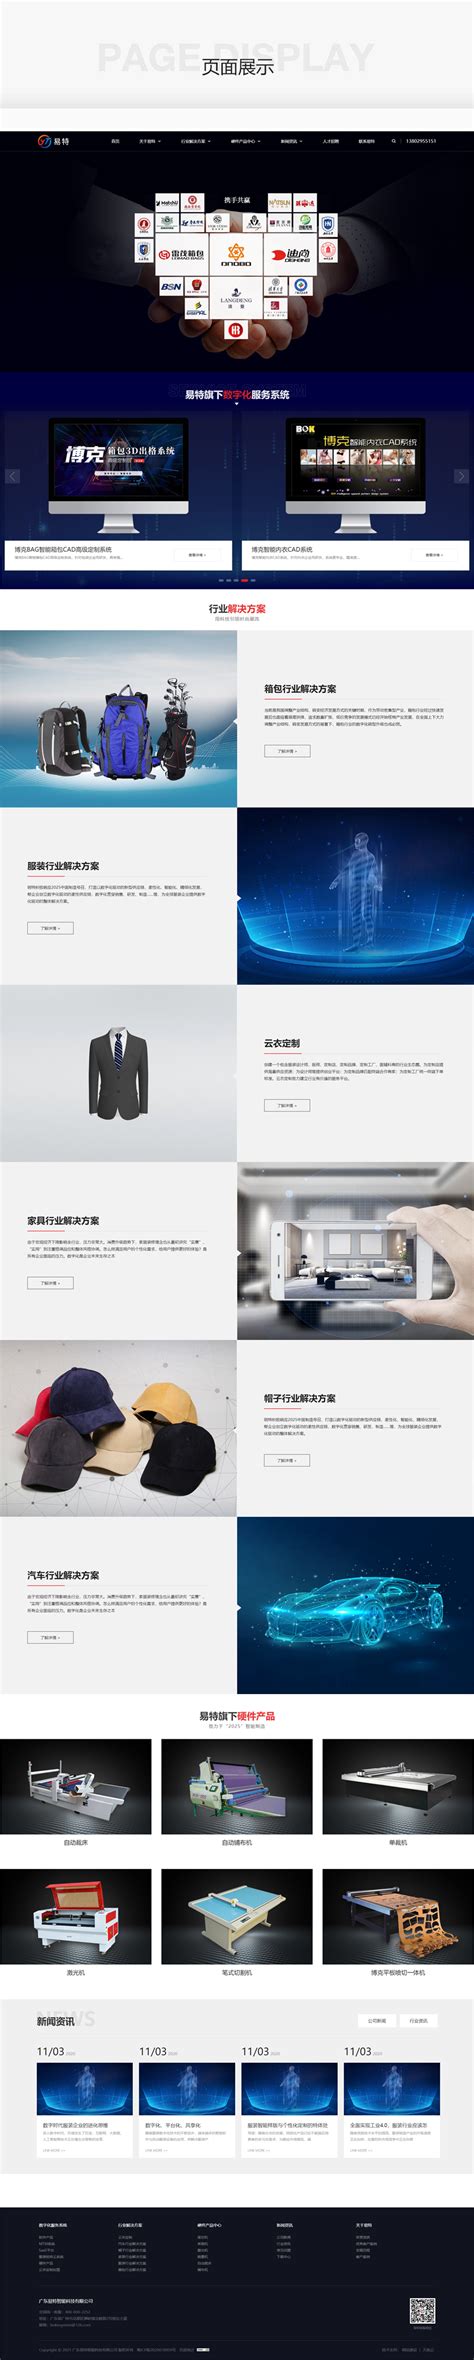 东莞网站建设让你的网站设计与众不同【七种技巧】_东莞市华略品牌创意设计有限公司